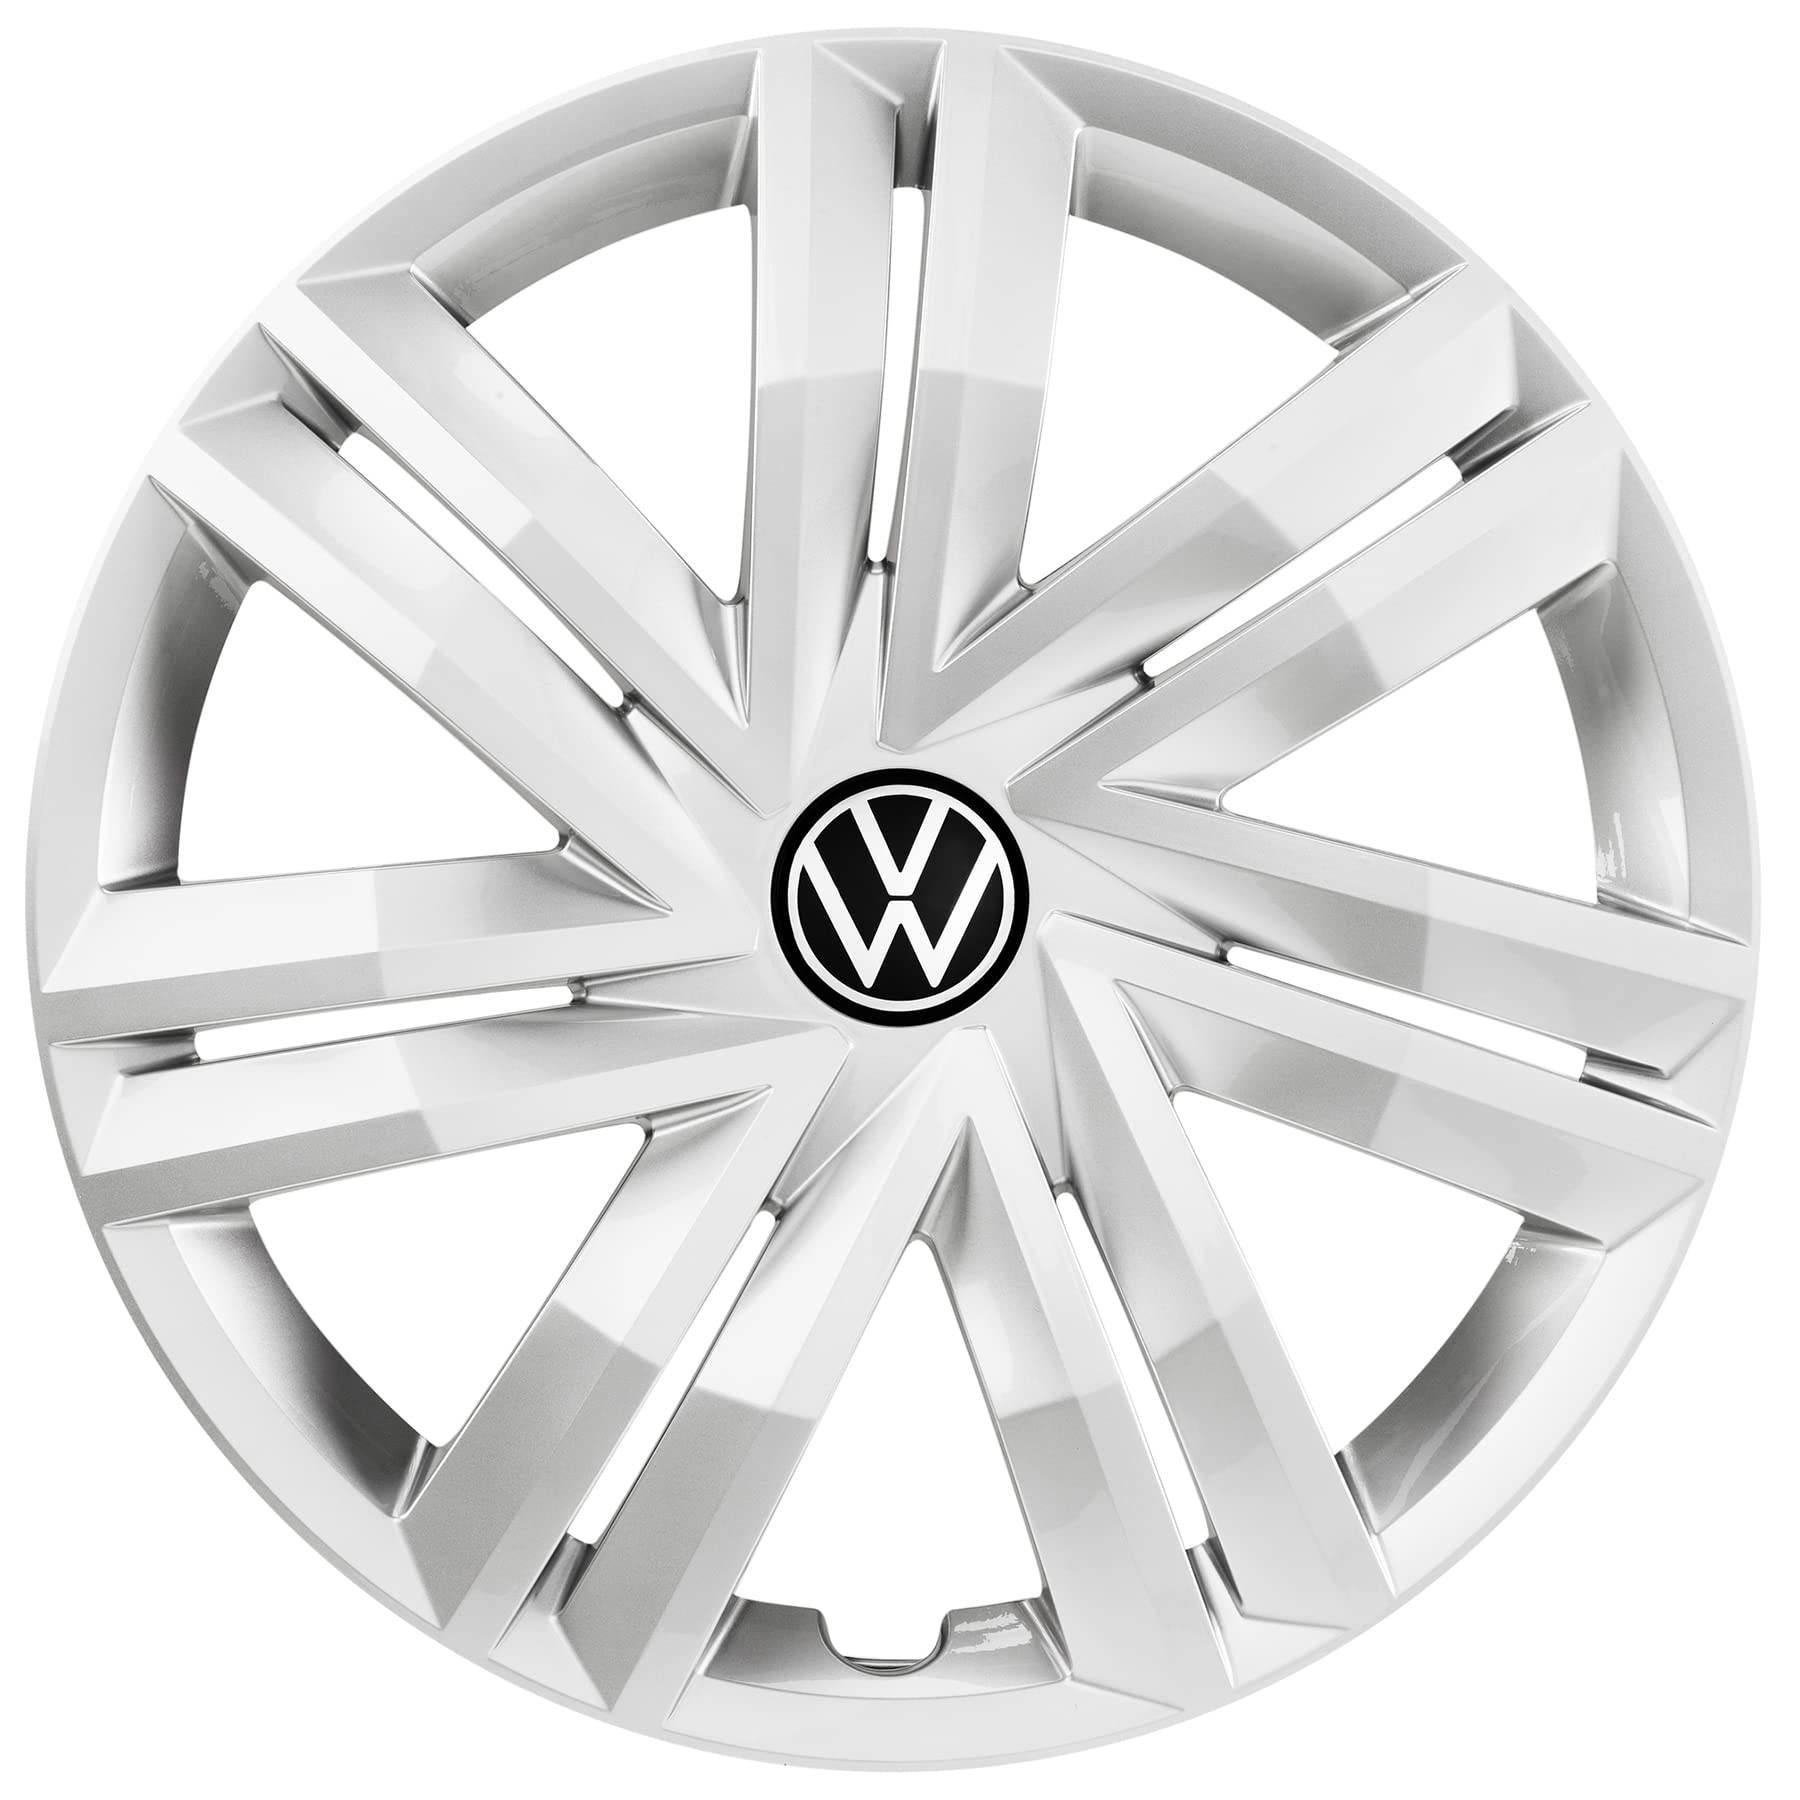 Volkswagen 5G0071456YTI 5G0071456 YTI Radkappen Radzierblenden für  Stahlfelgen - 4 Stück, Silber (Brillantsilber ), 16 Zoll